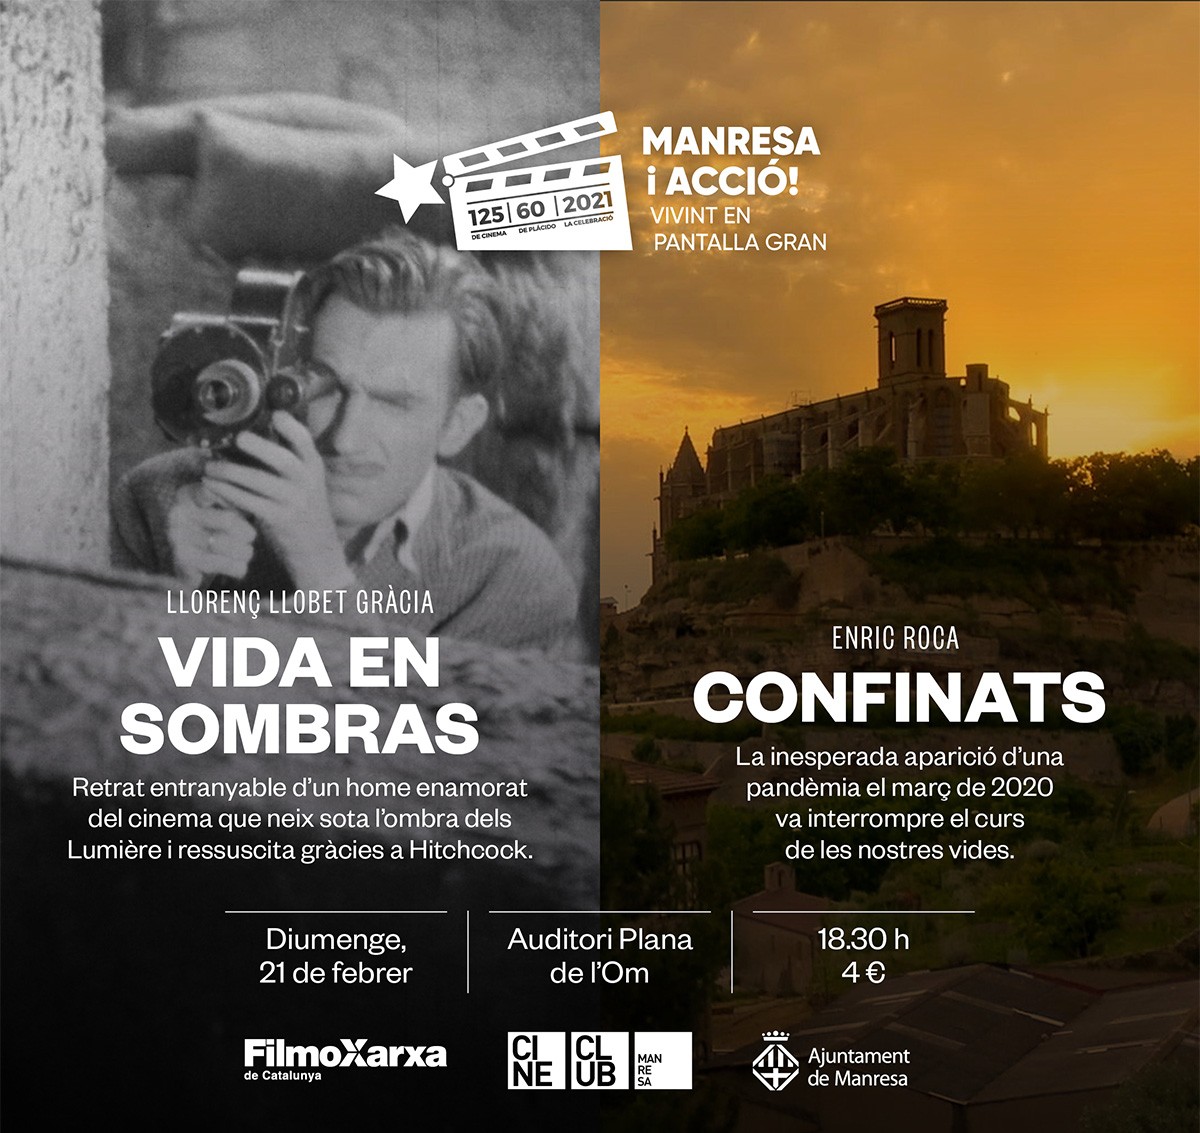 Sessió cinematogràfica amb la projecció de \'Vida en sombras\', llargmetratge dirigit per Llorenç Llobet-Gràcia, i l'estrena de \'Confinats\', curtmetratge d’Enric Roca.